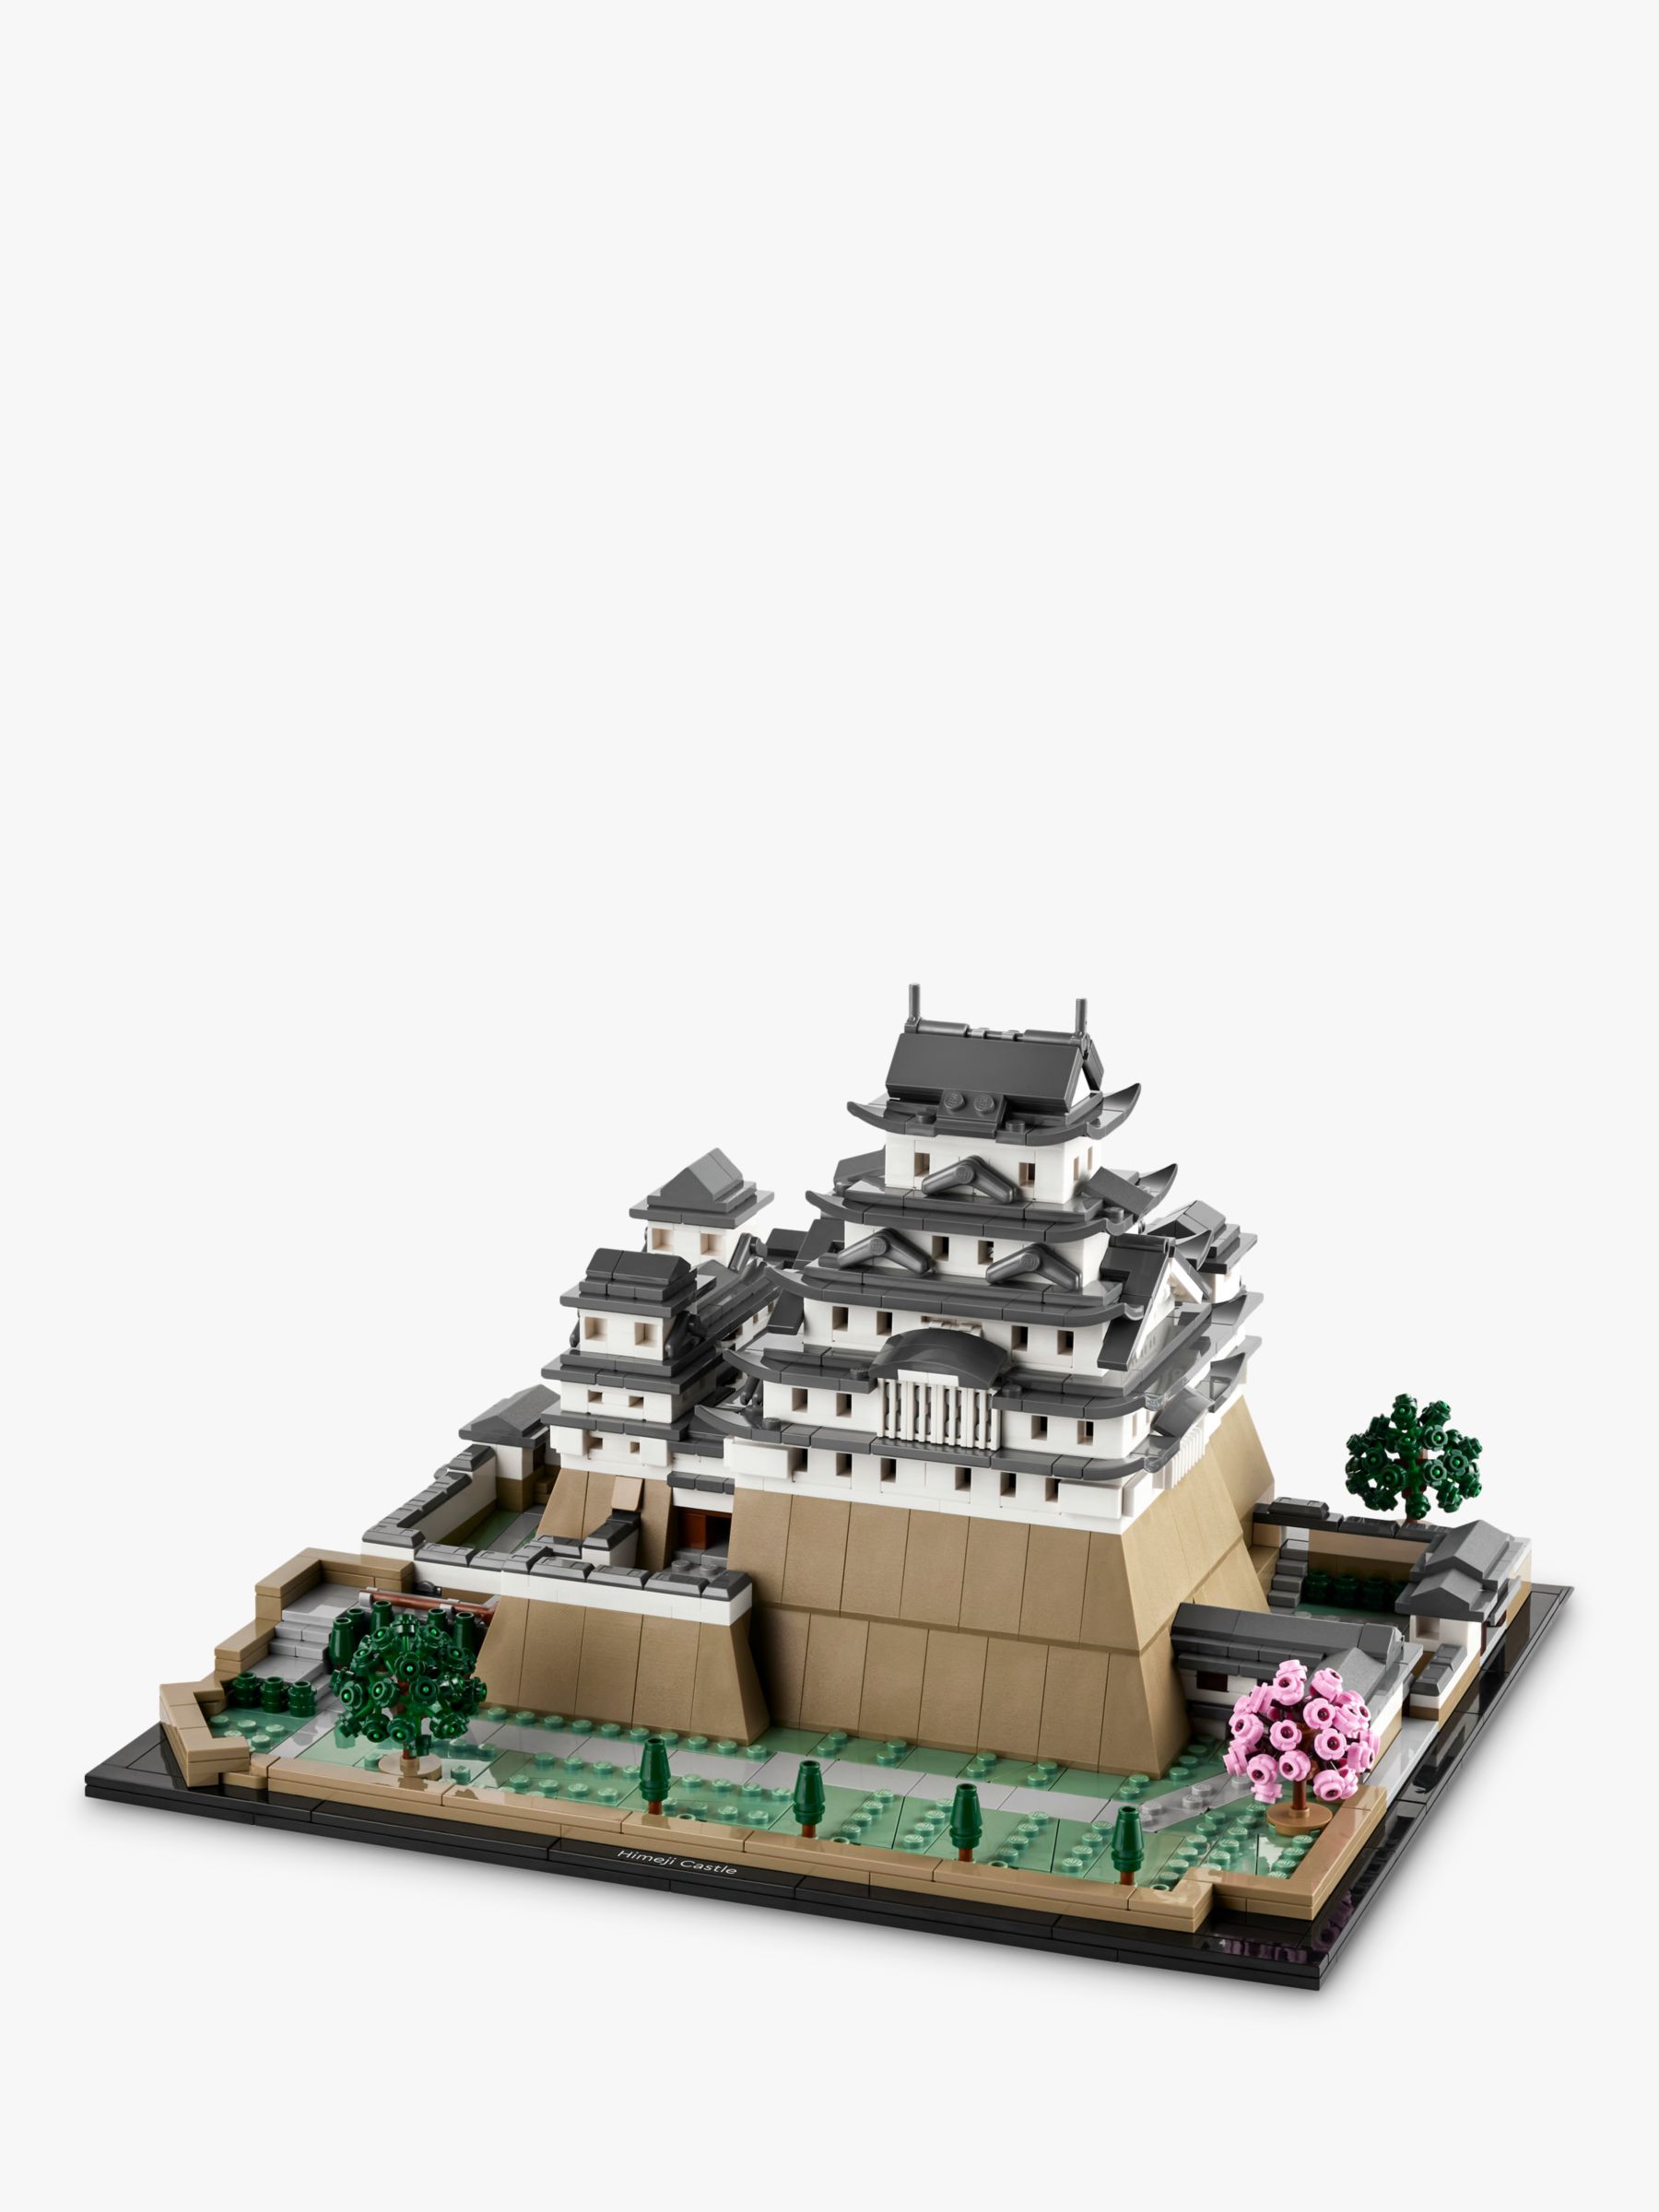 LEGO Japanese Architecture, Japanese castle. Built of LEGO …